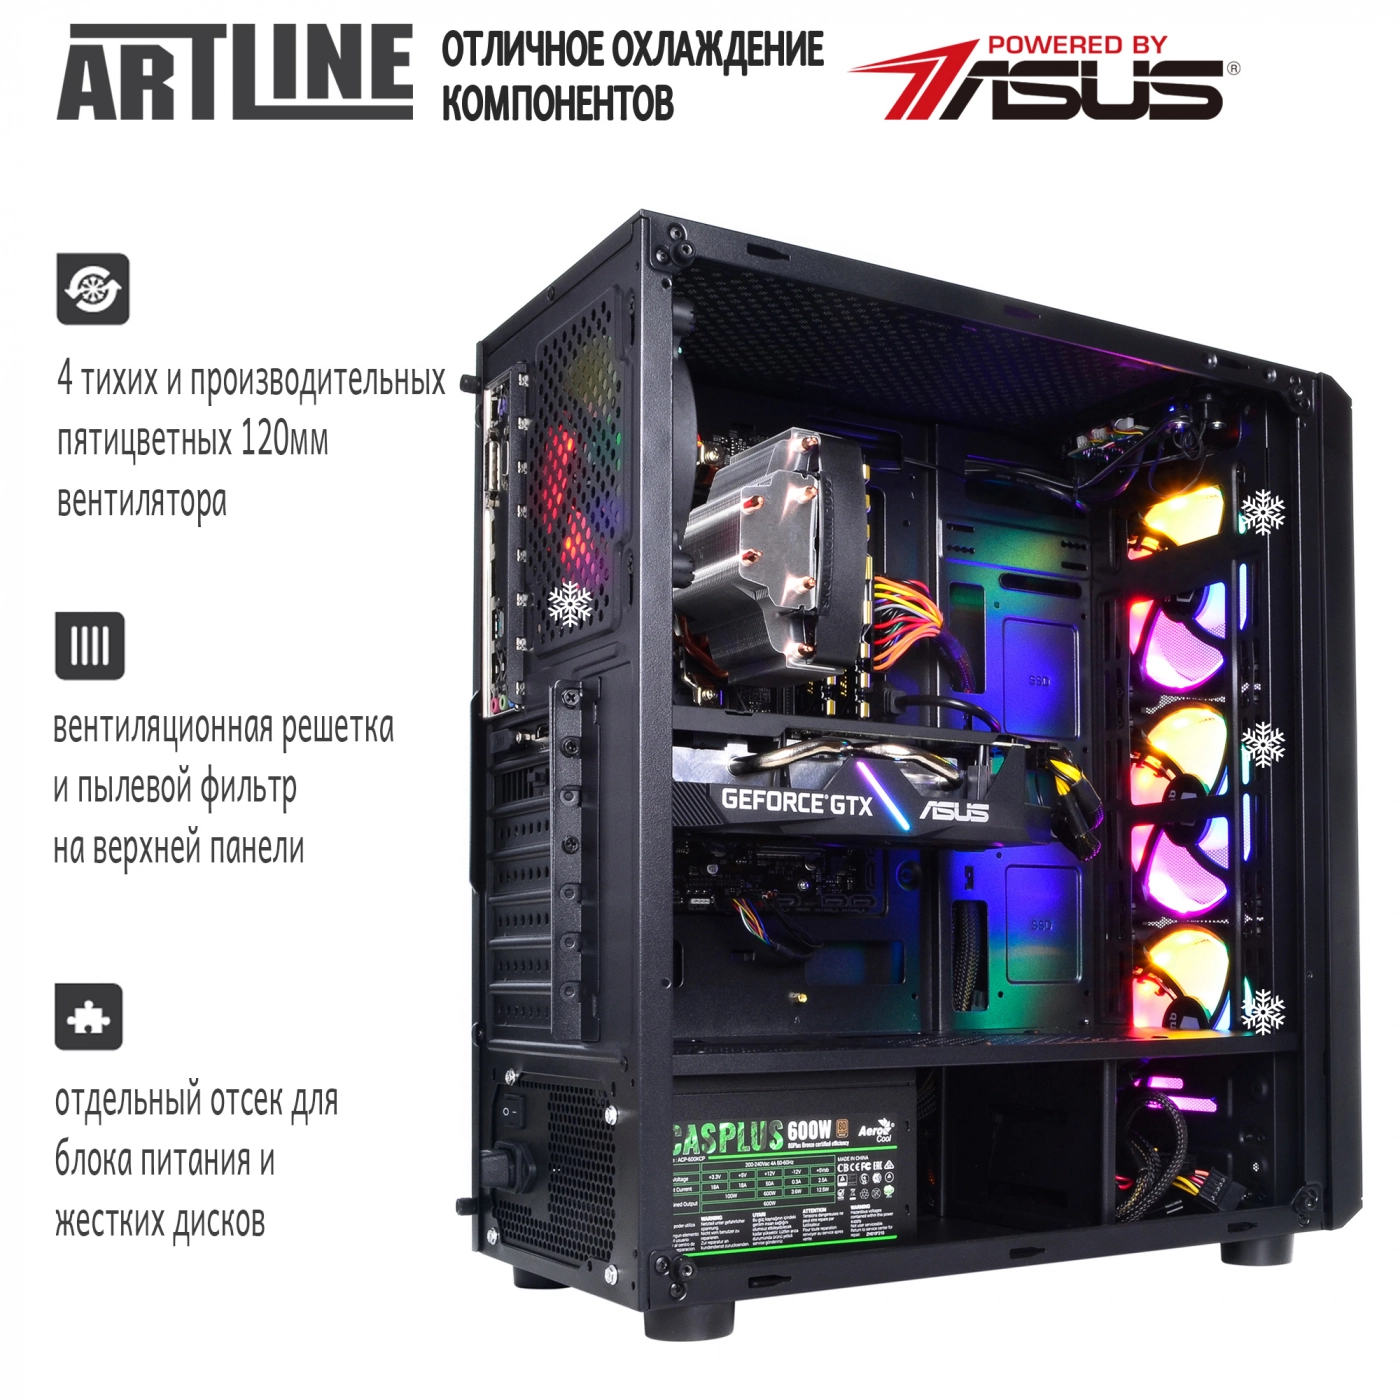 Купить Компьютер ARTLINE Gaming X39v32 - фото 5